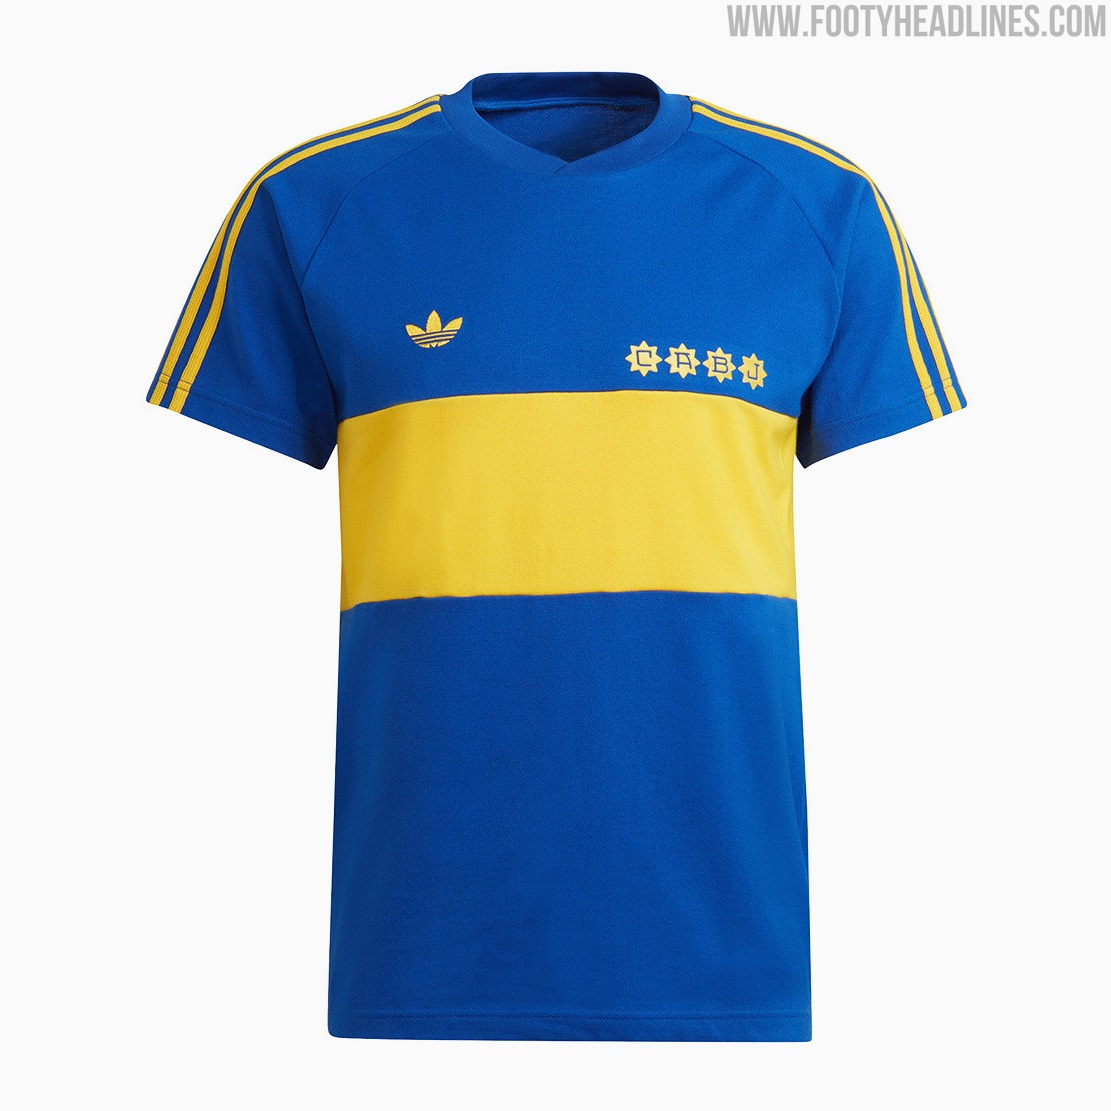 Adidas Originals Boca Juniors Collection Leaked